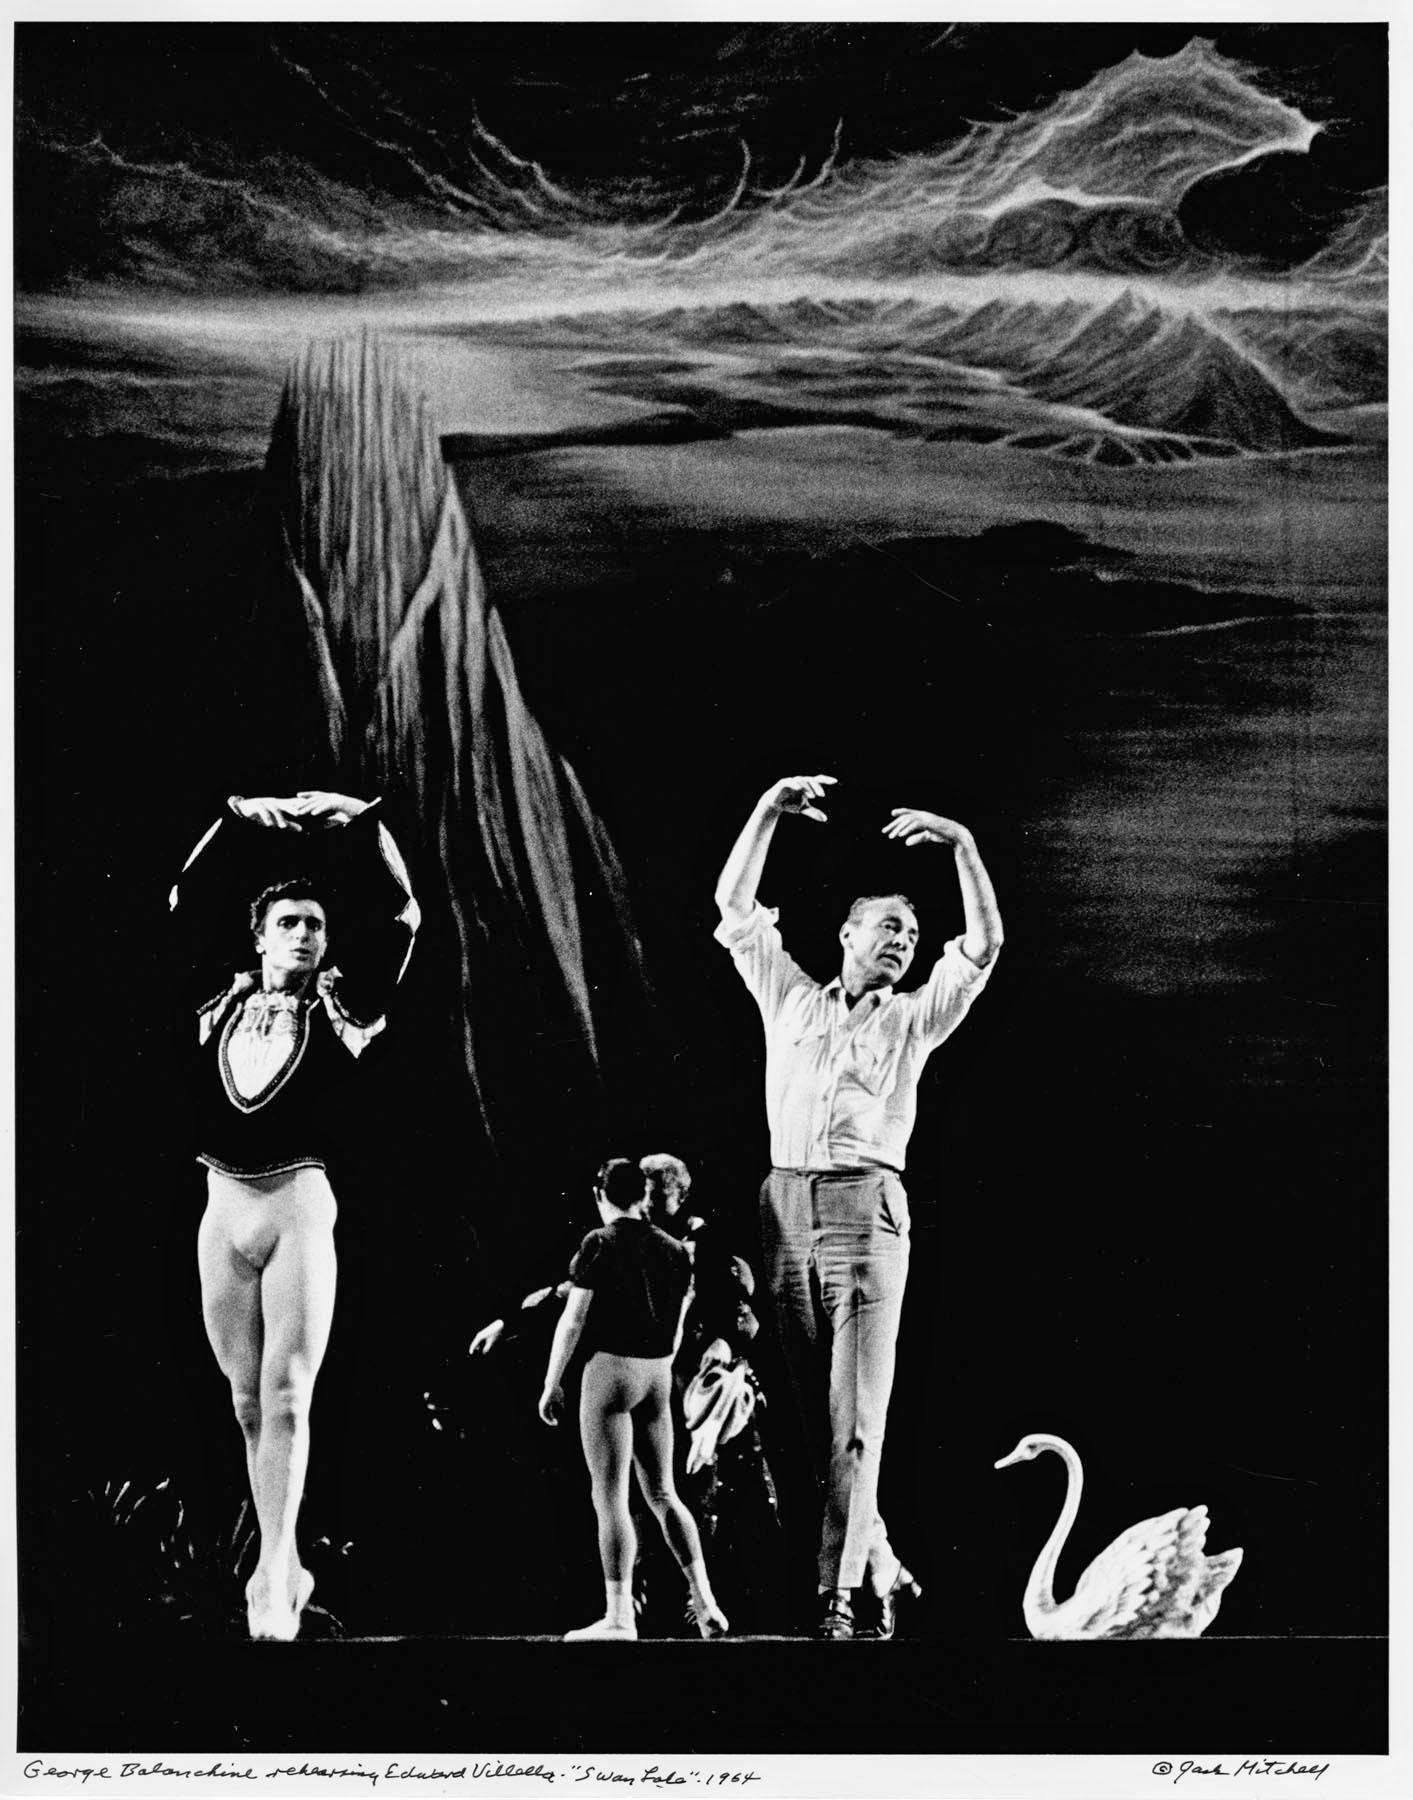 11 x 14" alte Silbergelatinefotografie des Choreografen und Ballettmeisters George Balanchine bei den Proben zu Edward Villella in "Schwanensee" im Jahr 1964. Signiert von Jack Mitchell auf der Vorderseite des Drucks und auf der Rückseite in